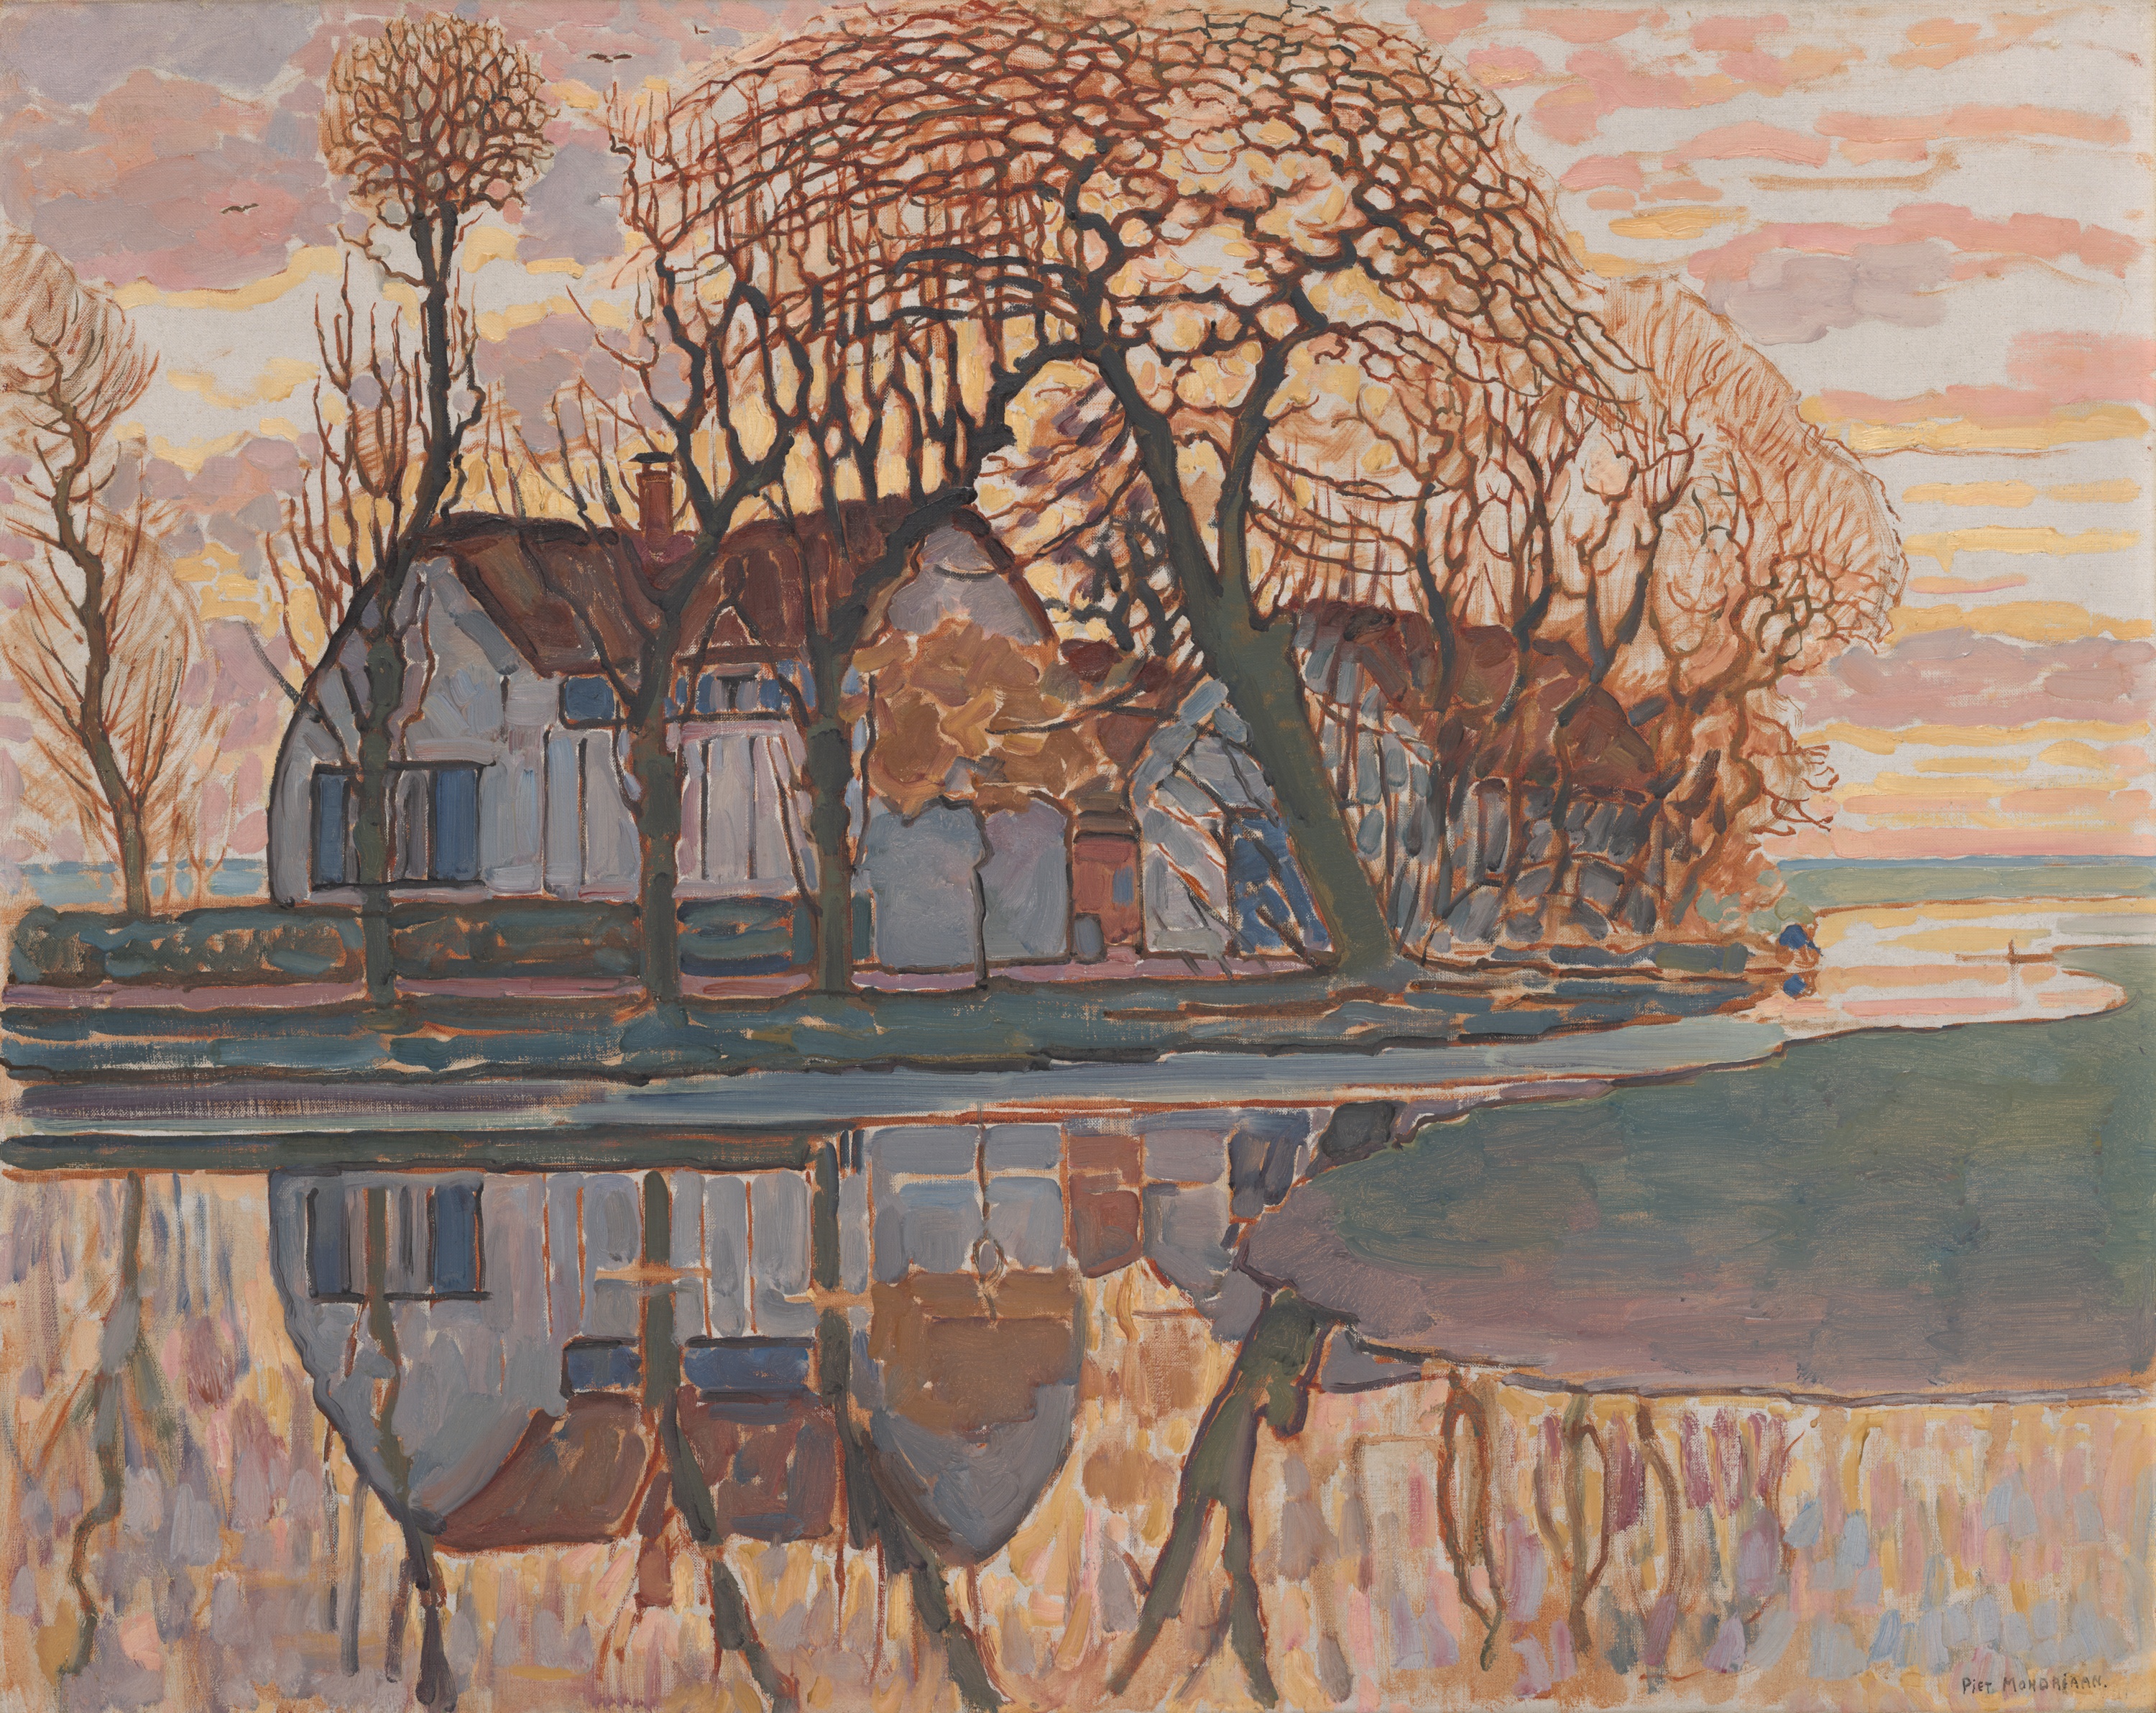 Фарма код Довендрехта by Piet Mondrian - ca. 1916. - 86.3 × 107.9 cm 